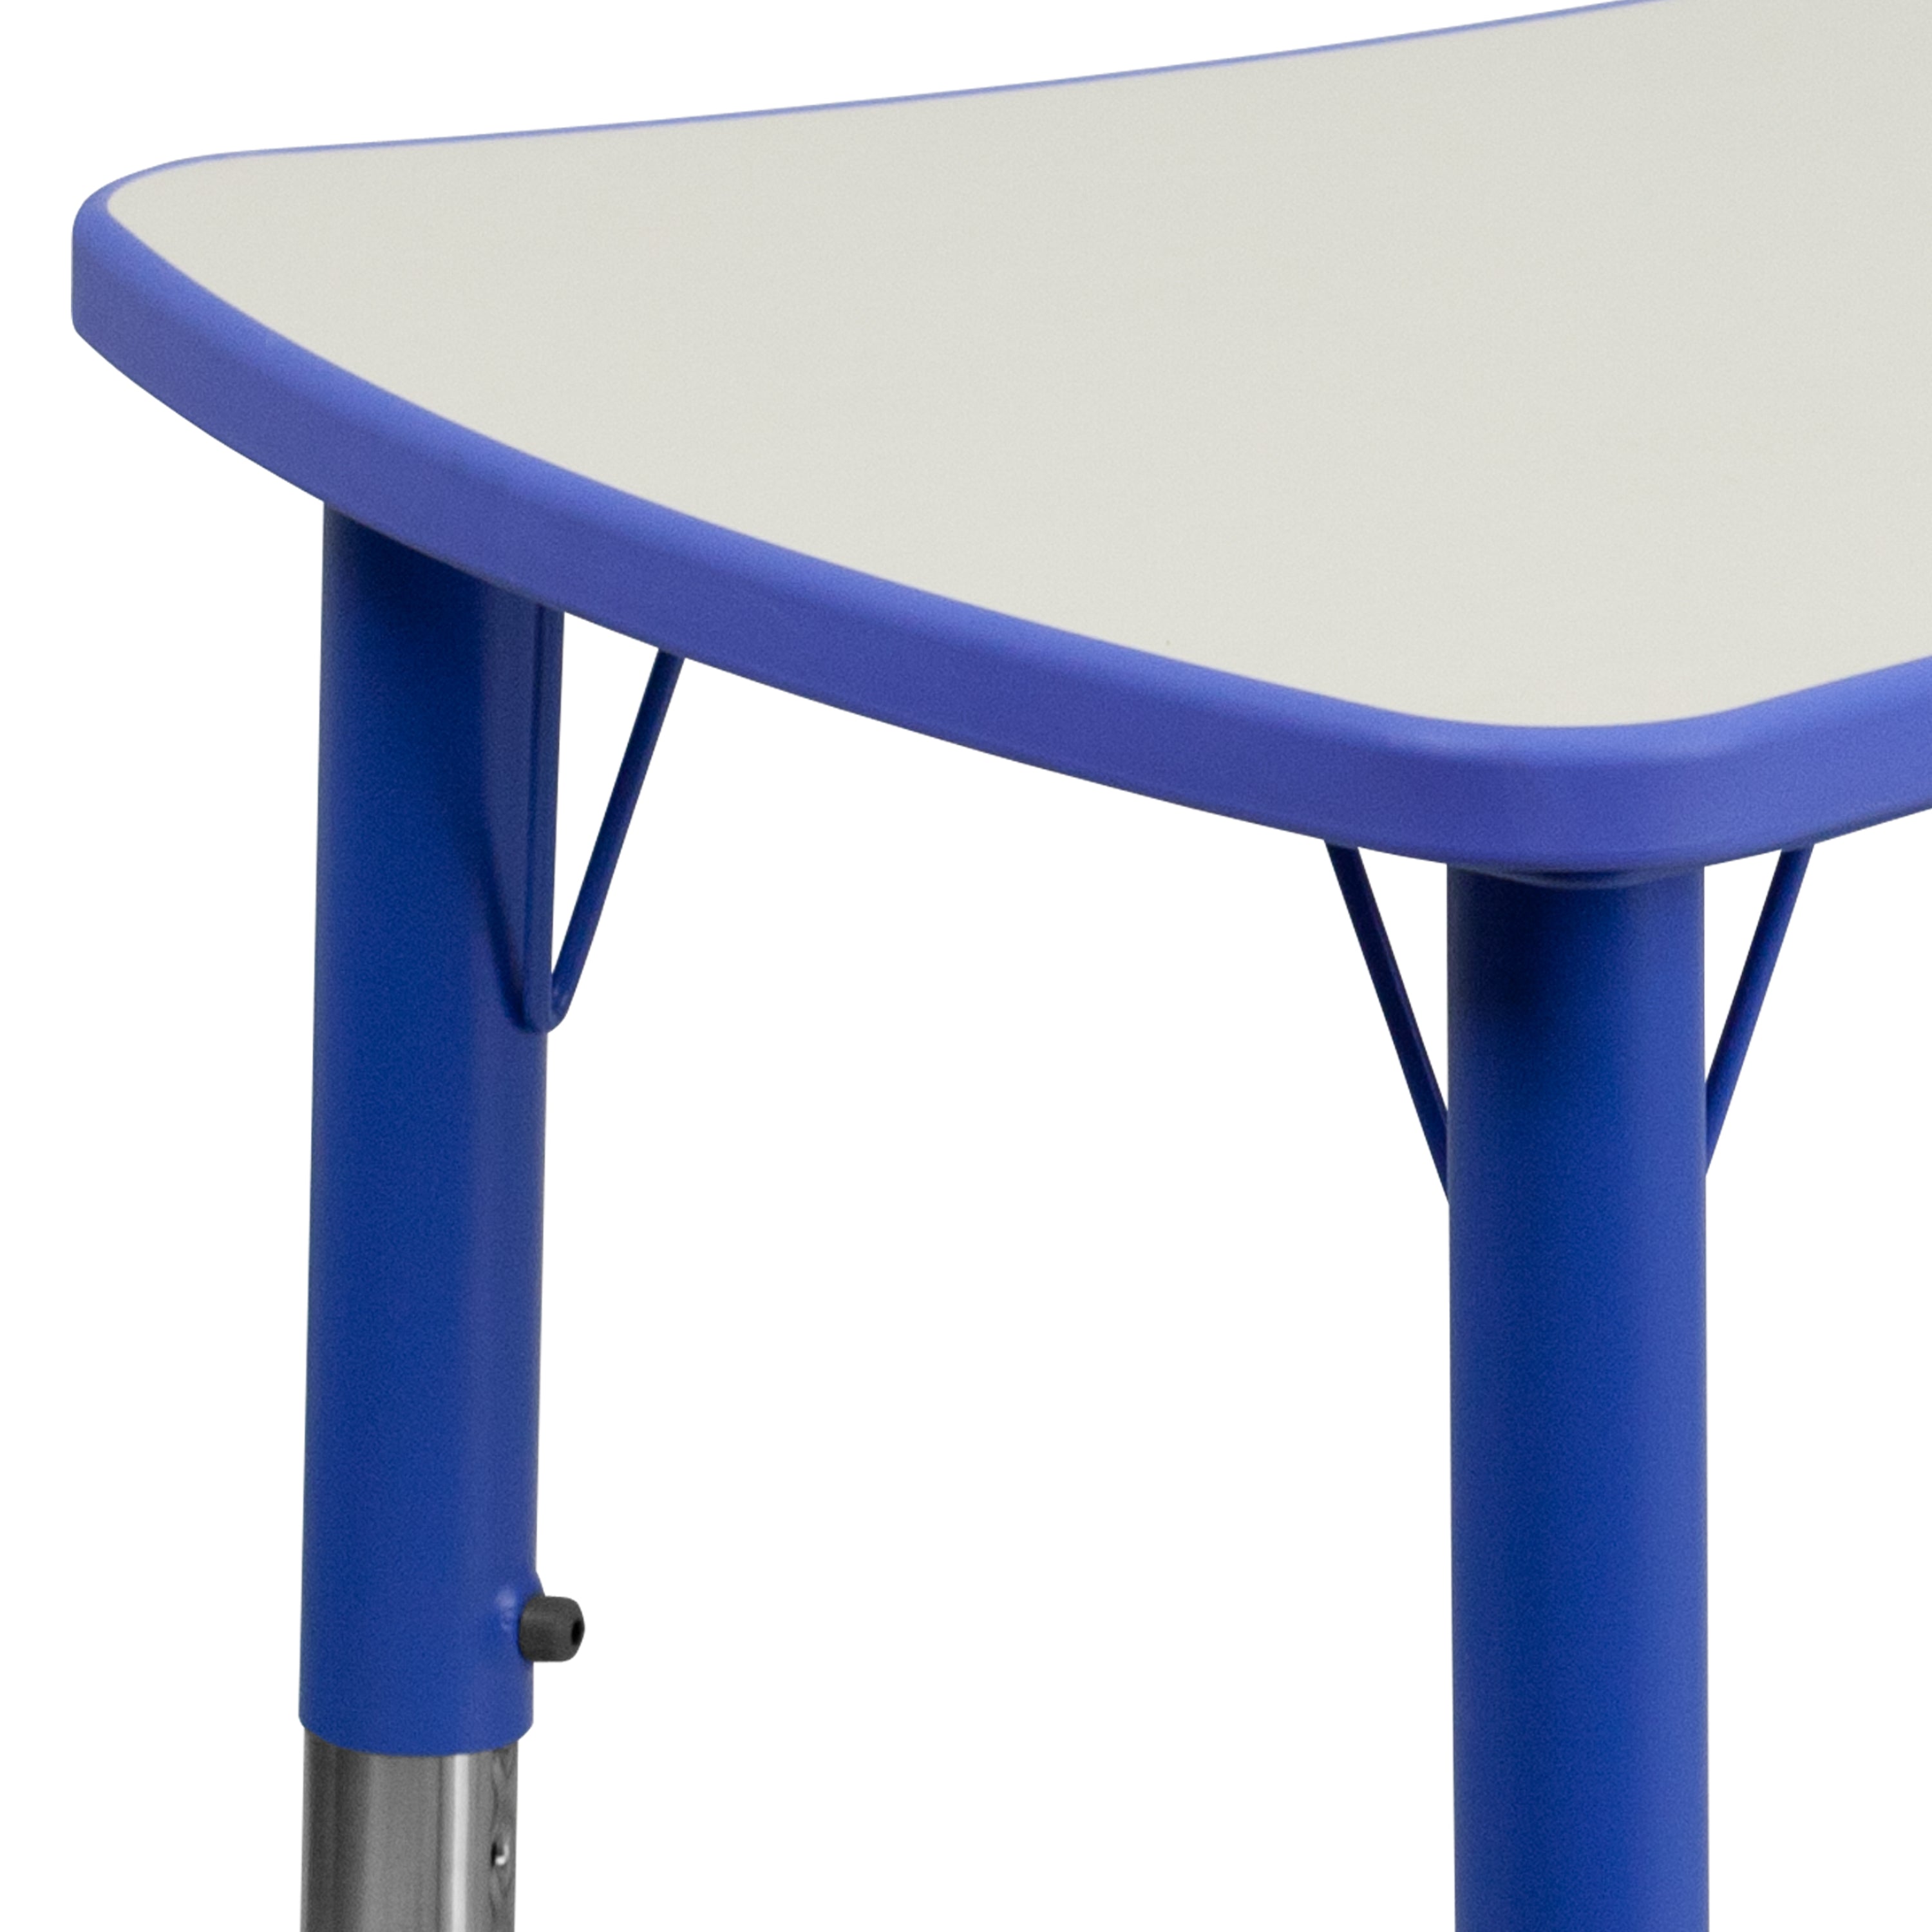 21.875"W x 26.625"L Rectangular Plastic Height Adjustable Activity Table-Rectangular Colorful Activity Table-Flash Furniture-Wall2Wall Furnishings